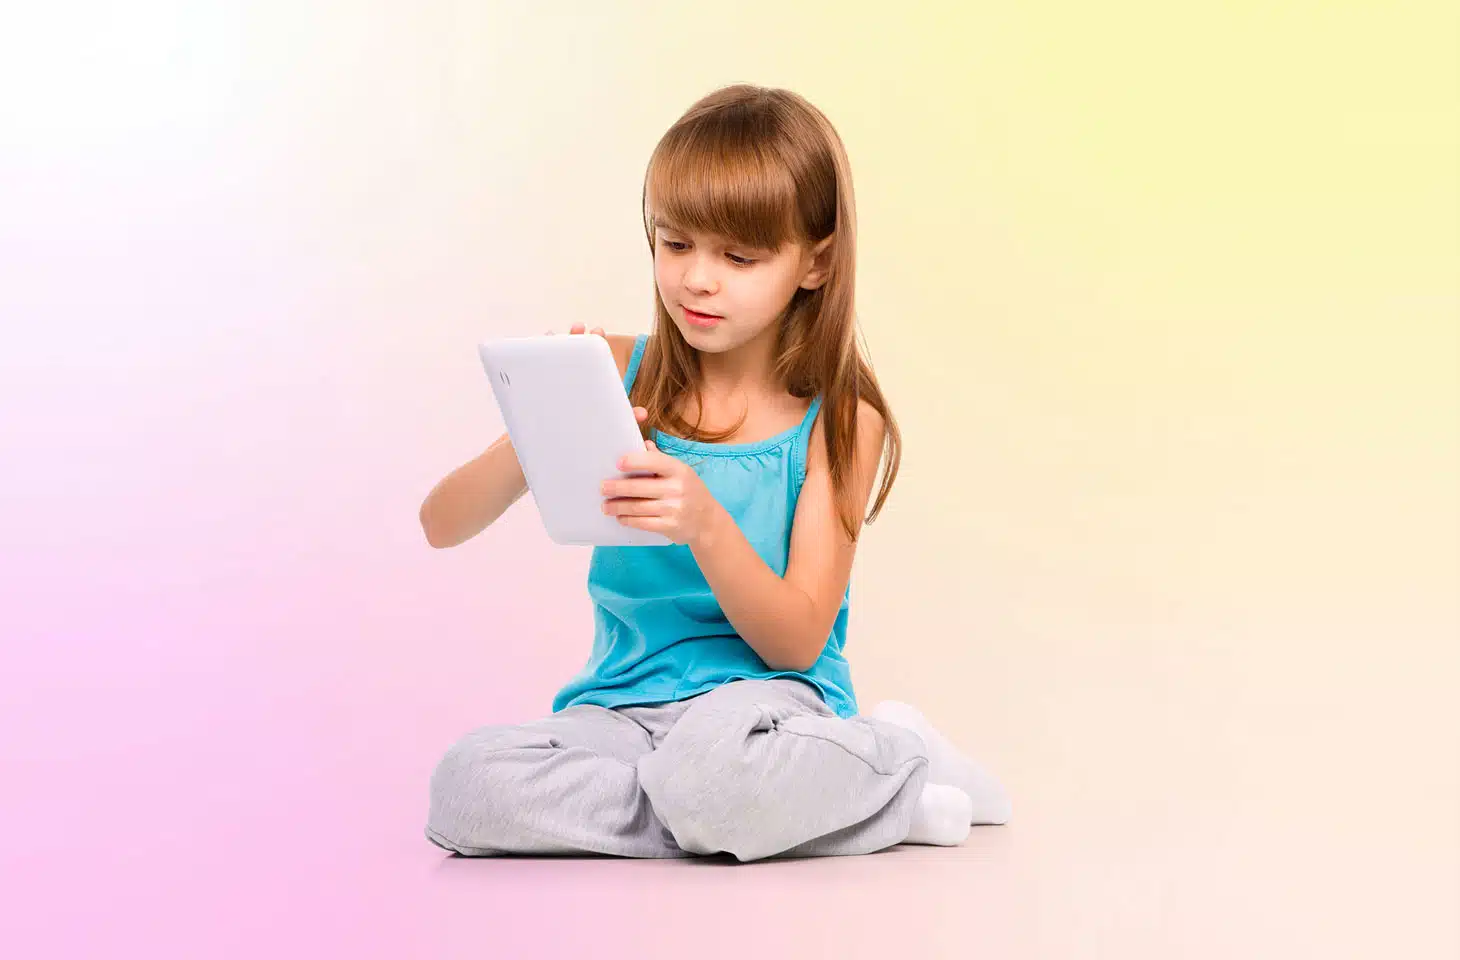 criança sentada usando celular